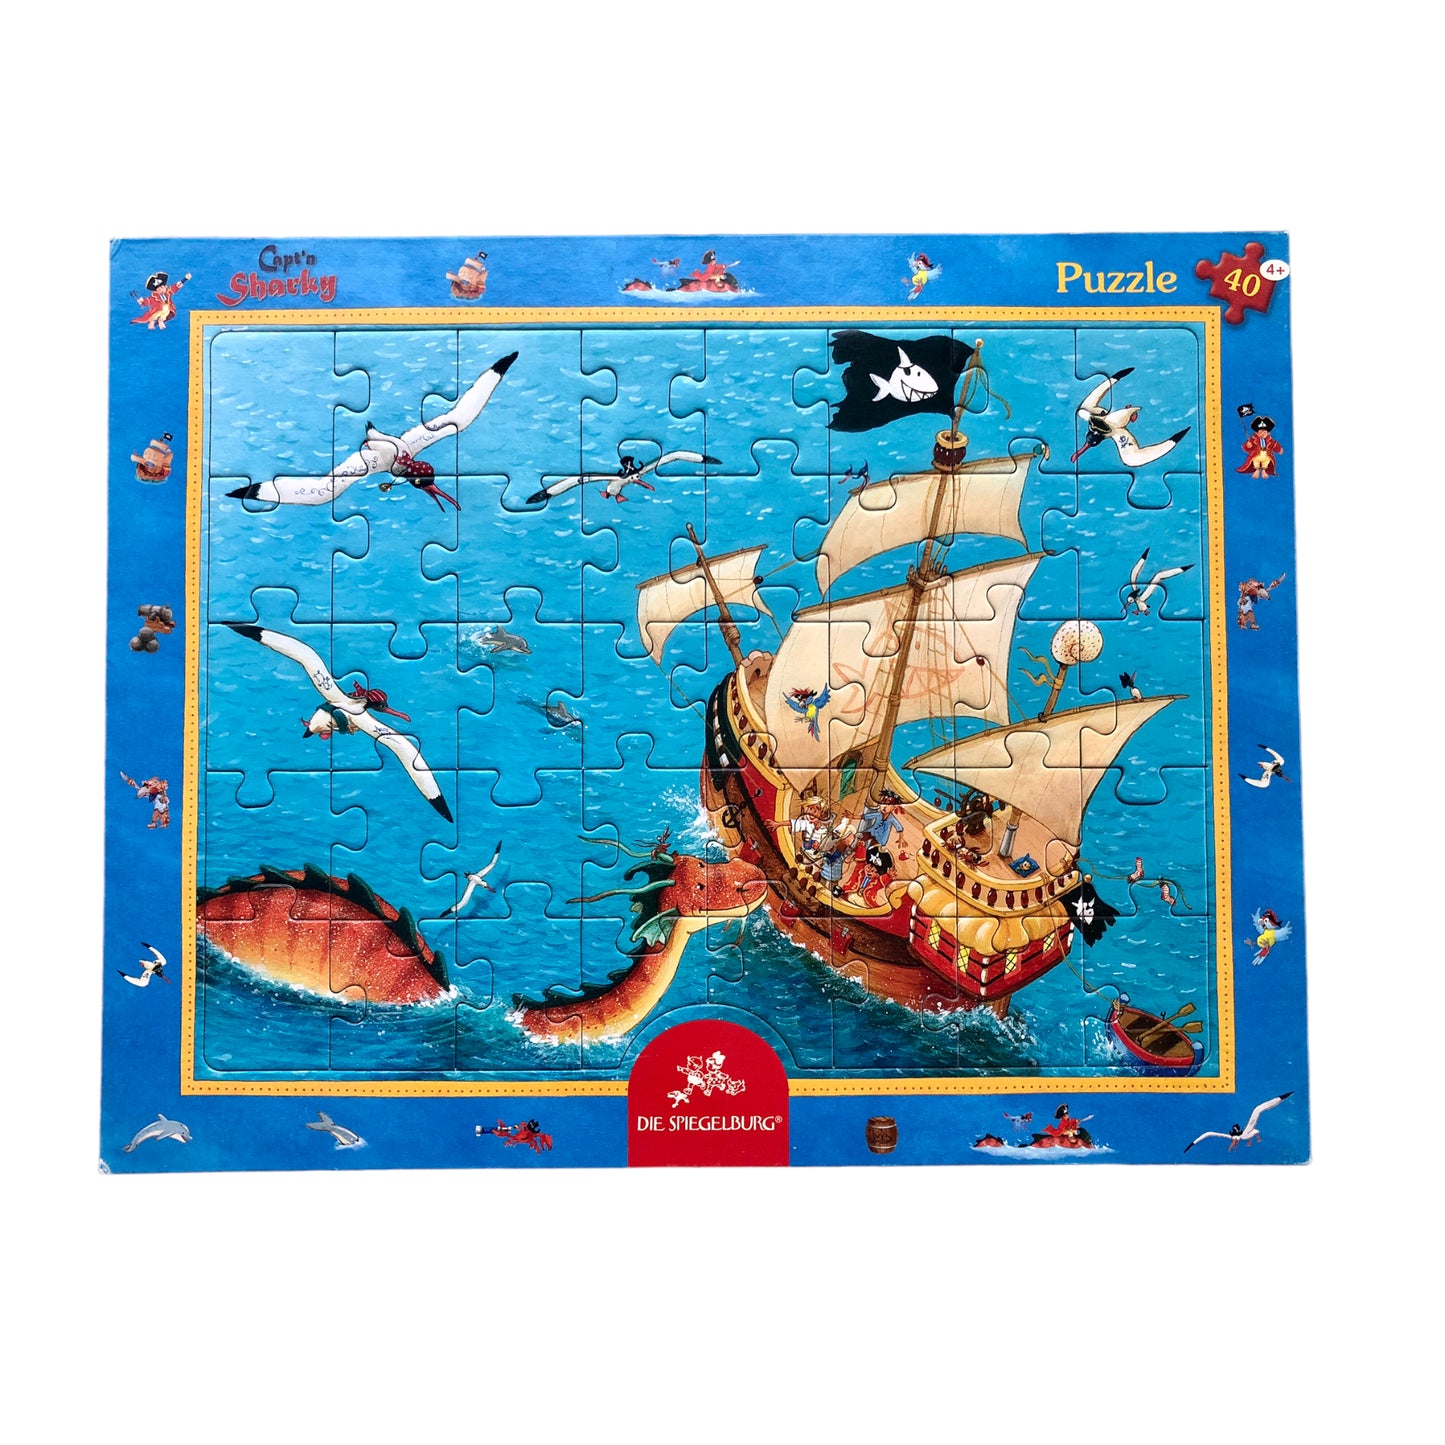 Die Spiegelburg - Capt'n Sharky Puzzle - 40 pieces